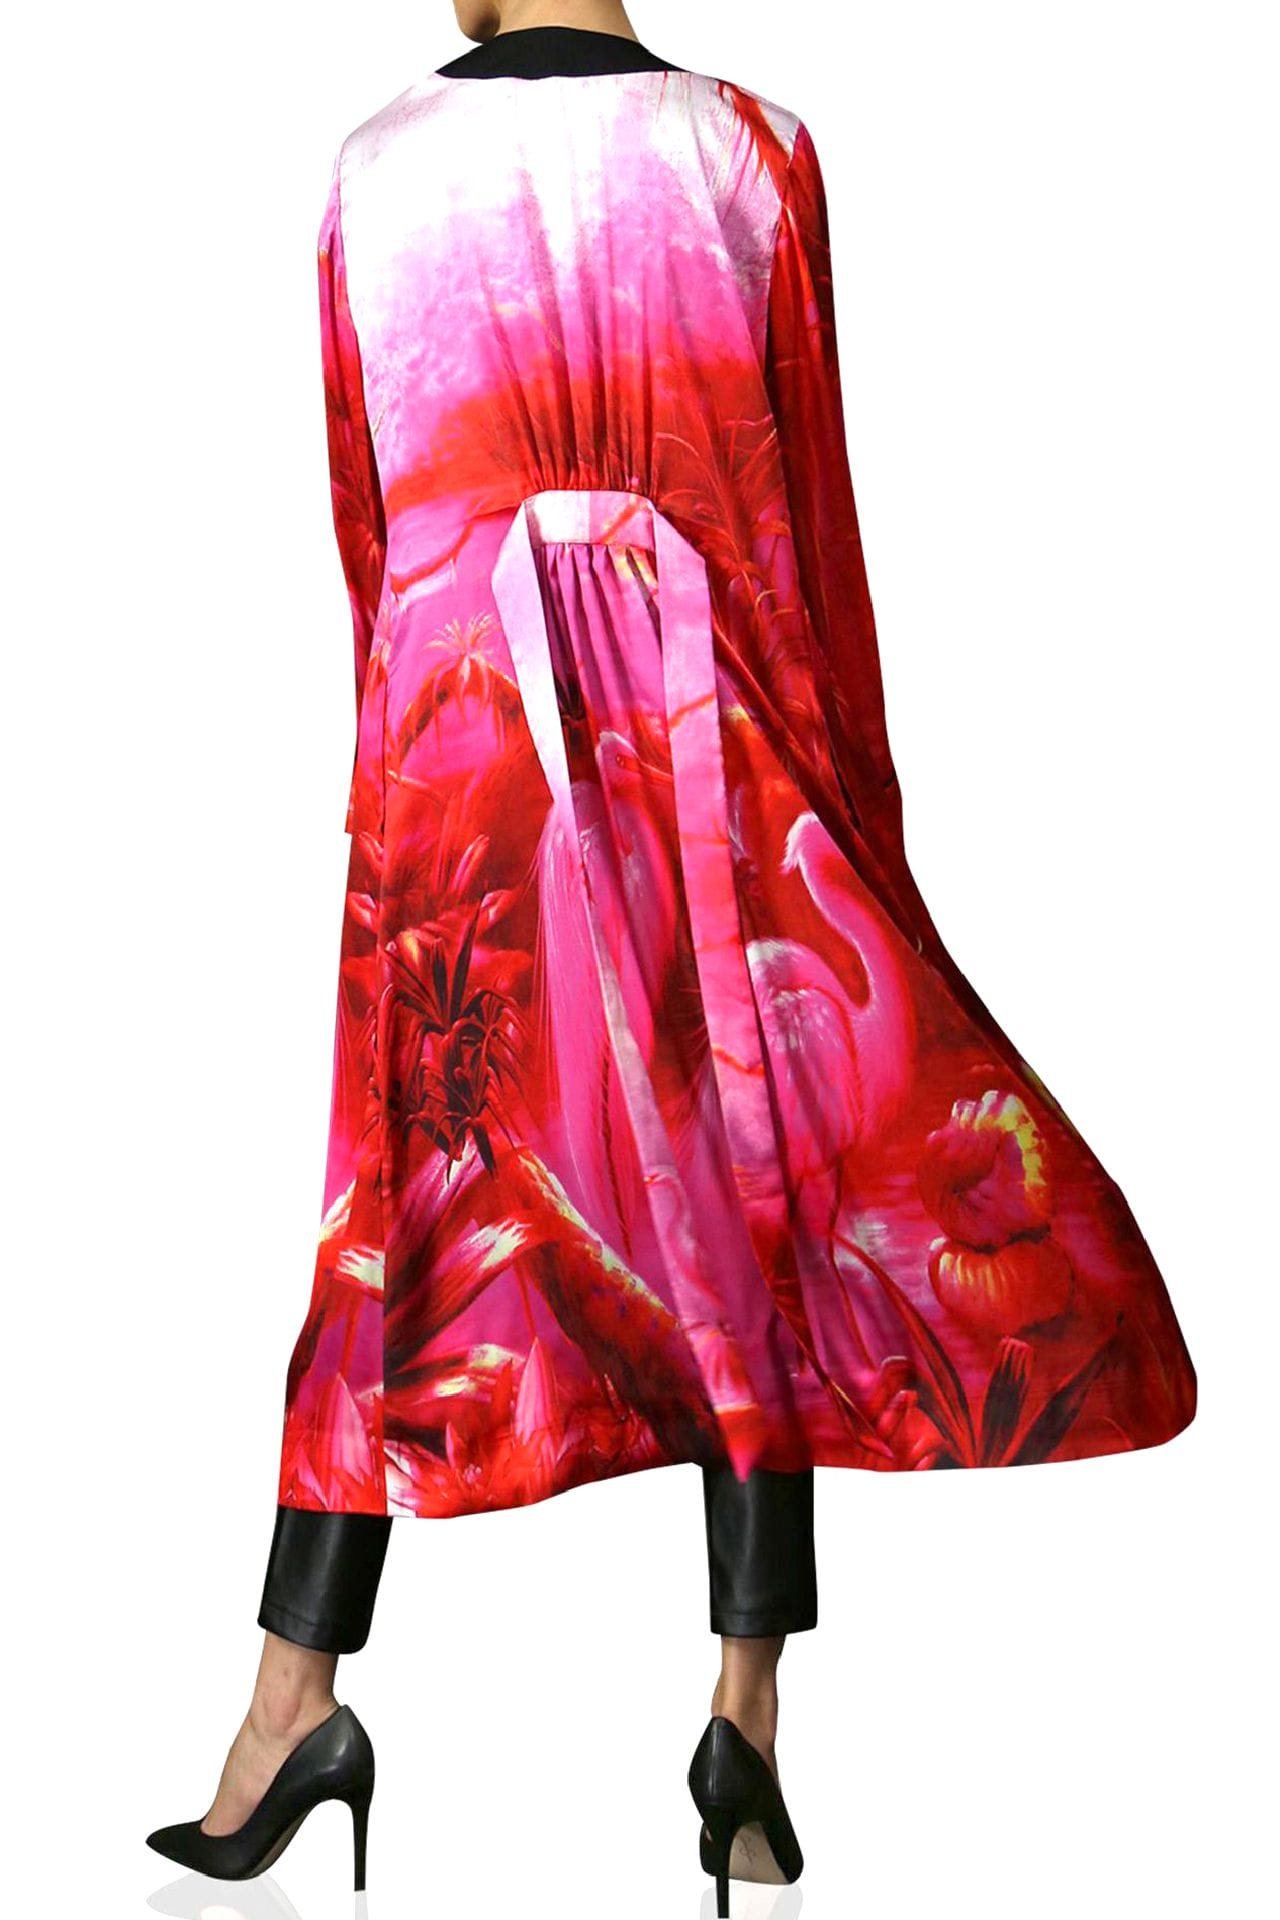 "womens long kimono" "luxury kimono" "Kyle X Shahida" "robe silk kimono" "hot pink silk robe"